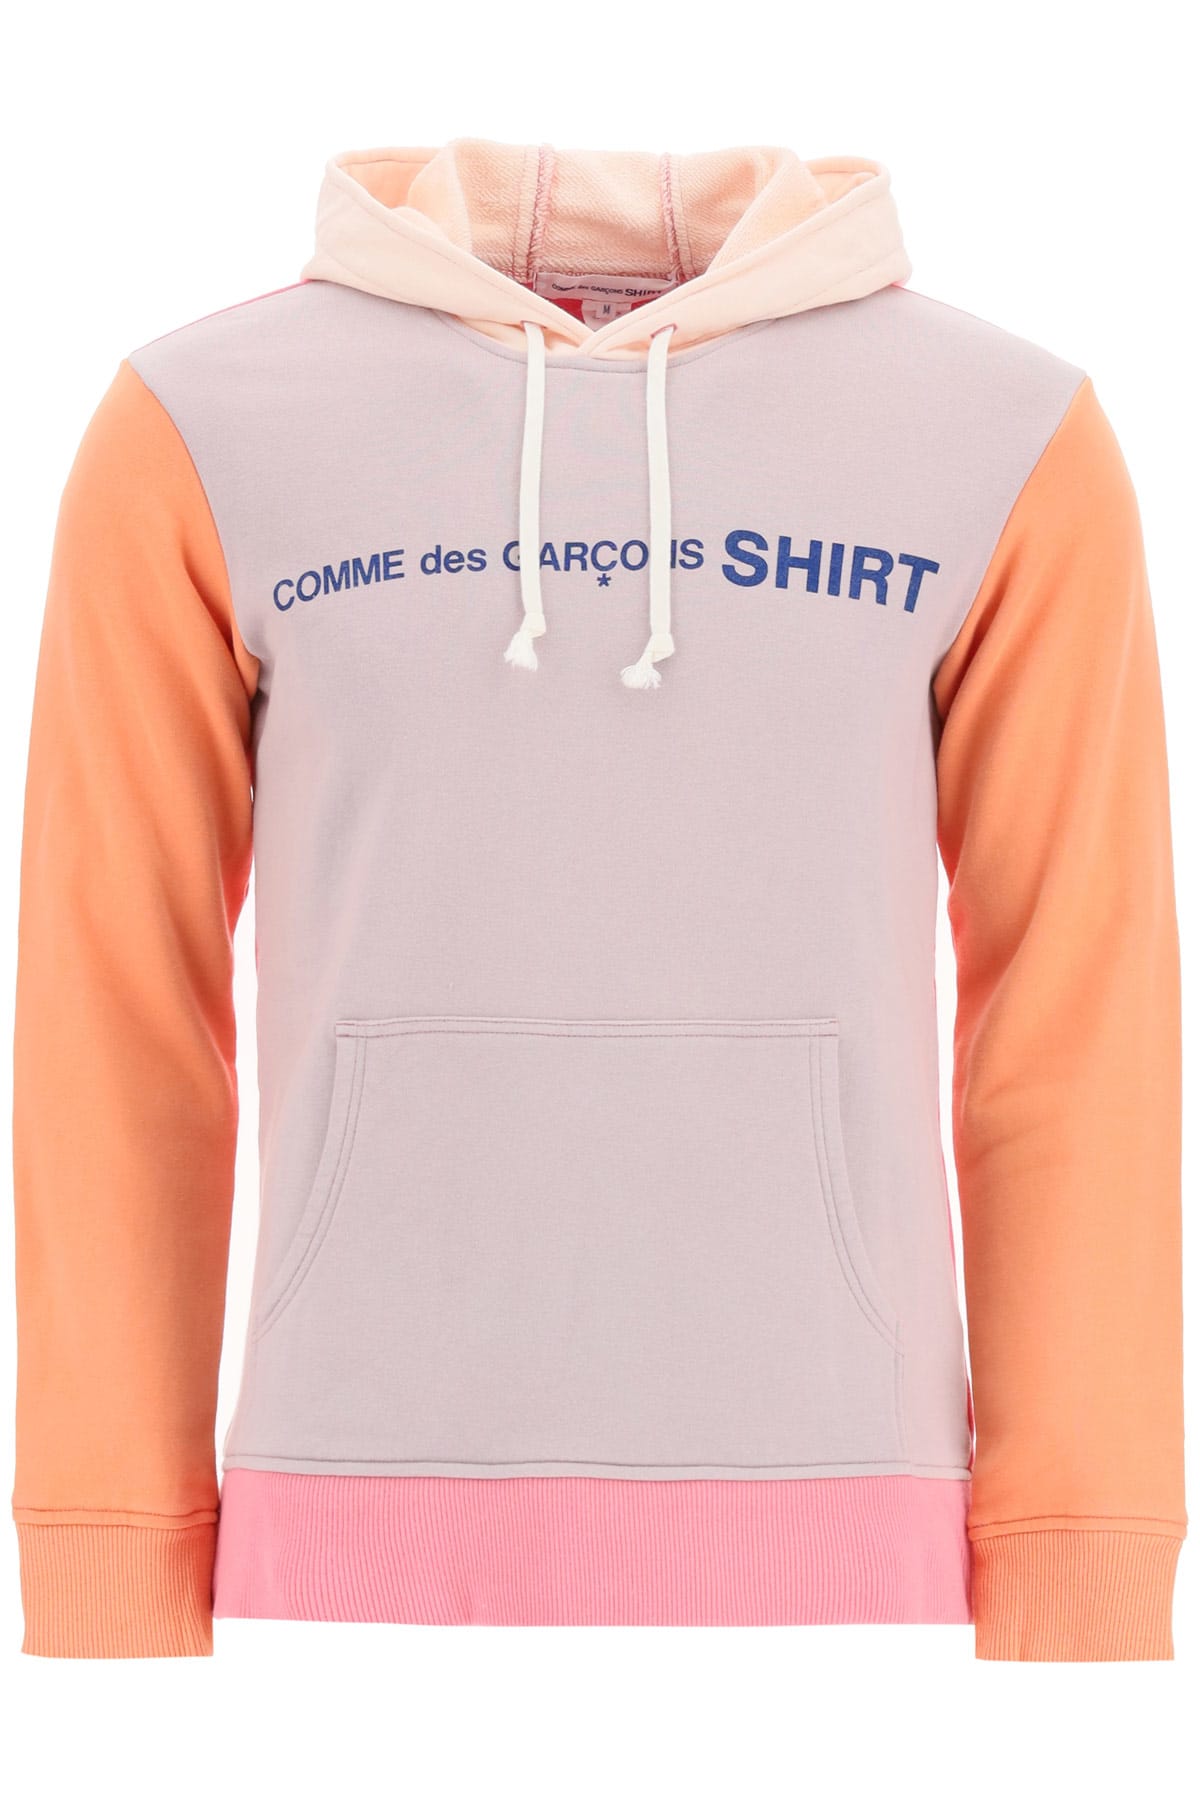 Comme des Garçons Shirt Logo Sweatshirt With Hood